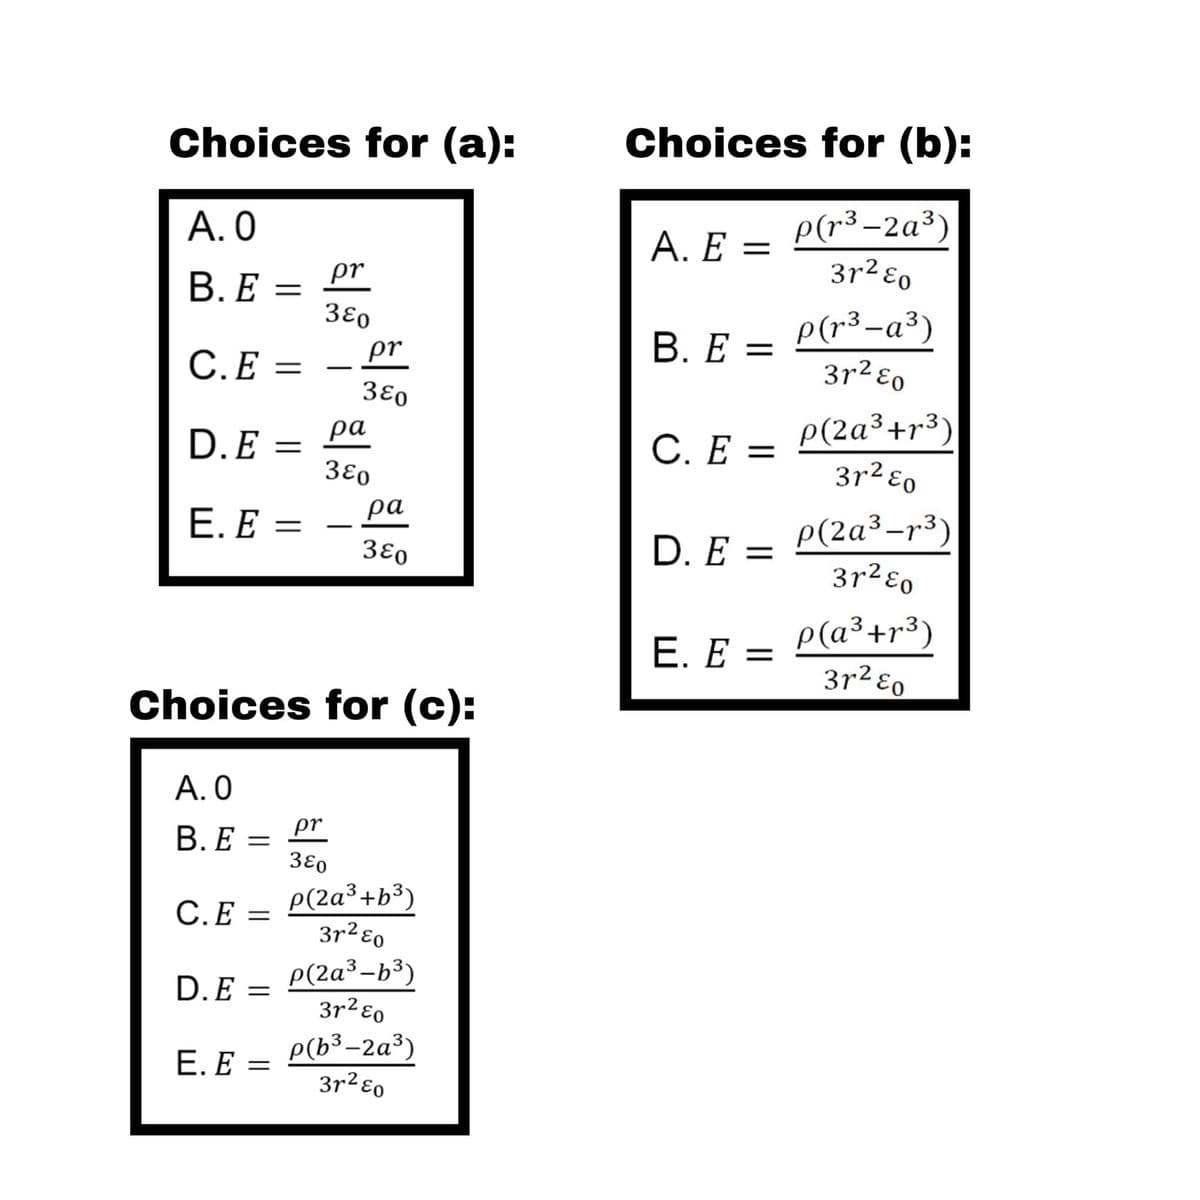 Choices for (a):
Choices for (b):
А. О
p(r³ –2a³)
3r2 ɛo
A. Ε=
pr
В.Е -
3Ɛo
В. Е —
P(r³-a³)
3r2 ɛo
C.E =
pr
%3D
3εο
C. E = P(2a³+r3)
3r2 ɛo
ра
D.E =
3ɛo
С. Е —
ра
Е. Е —
D. E = P(2a³-r3)
3r2ɛo
3ɛo
p(a³+r³)
3r² ɛo
E. E =
%3D
Choices for (c):
А.О
В.Е:
pr
3εο
P(2a³+b³)
3r2 ɛo
С.Е
D.E = P(2a³-b³)
3r2 ɛo
E. E = P(b³-2a³)
3r2ɛo
